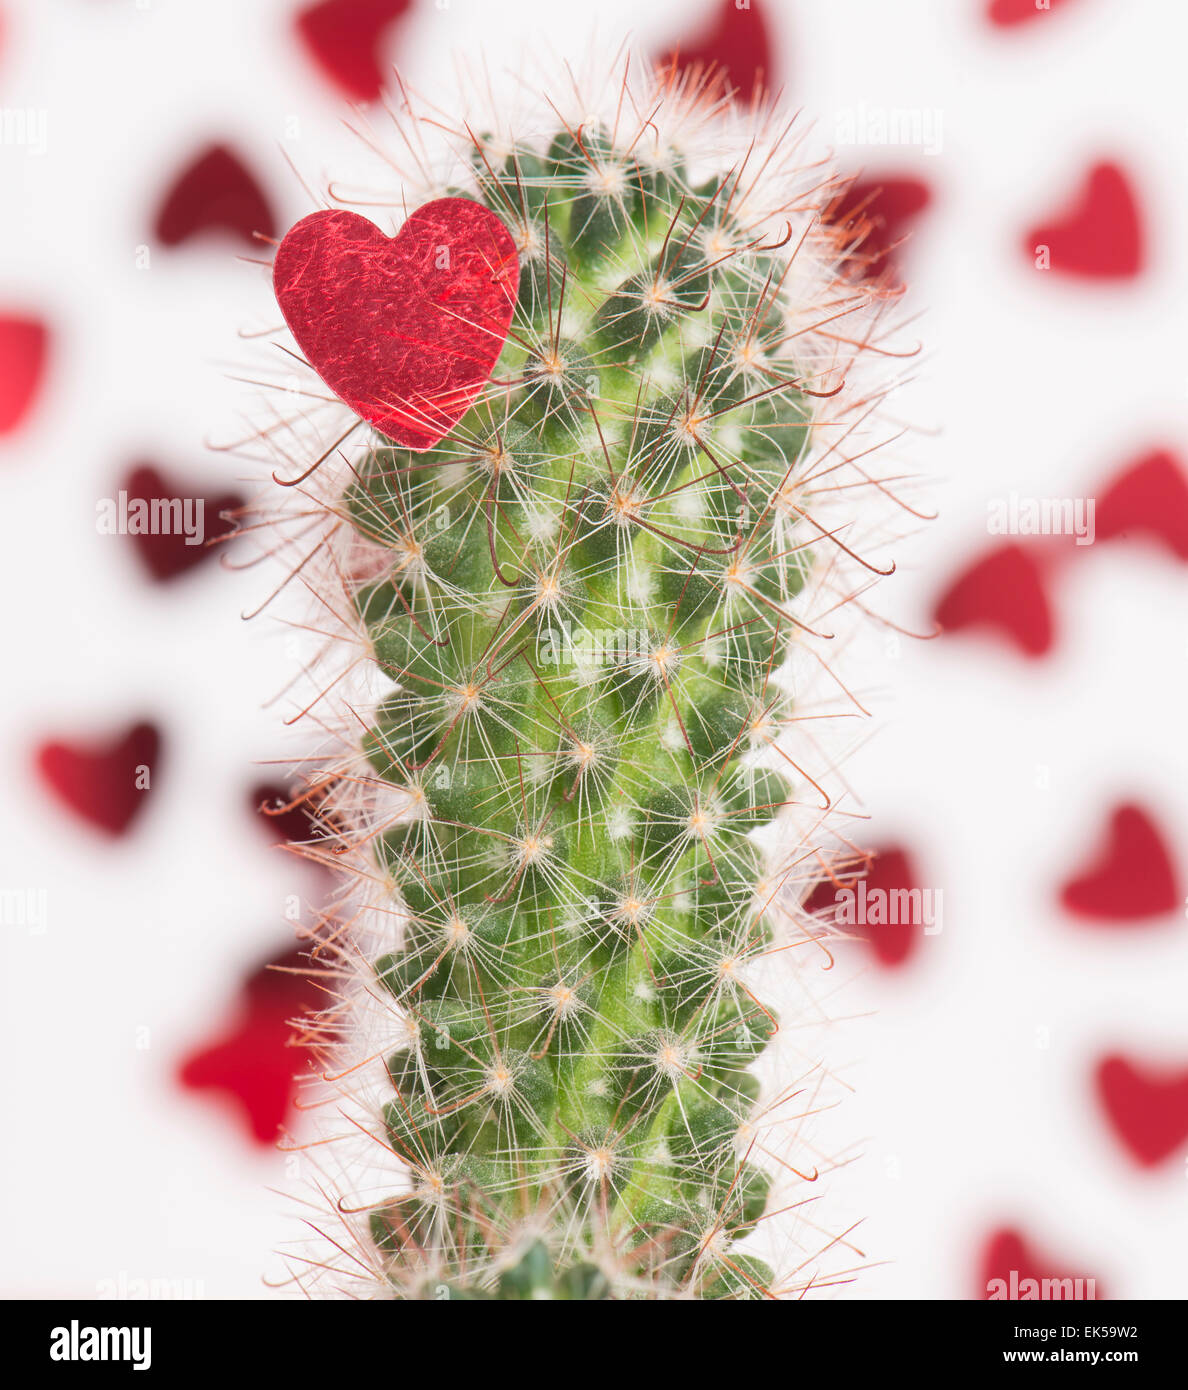 Rotes Herz auf die scharfen Thornes eines Kaktus gefangen. Konzeptbild von Herzschmerz und wenn Liebe weh tut. Stockfoto